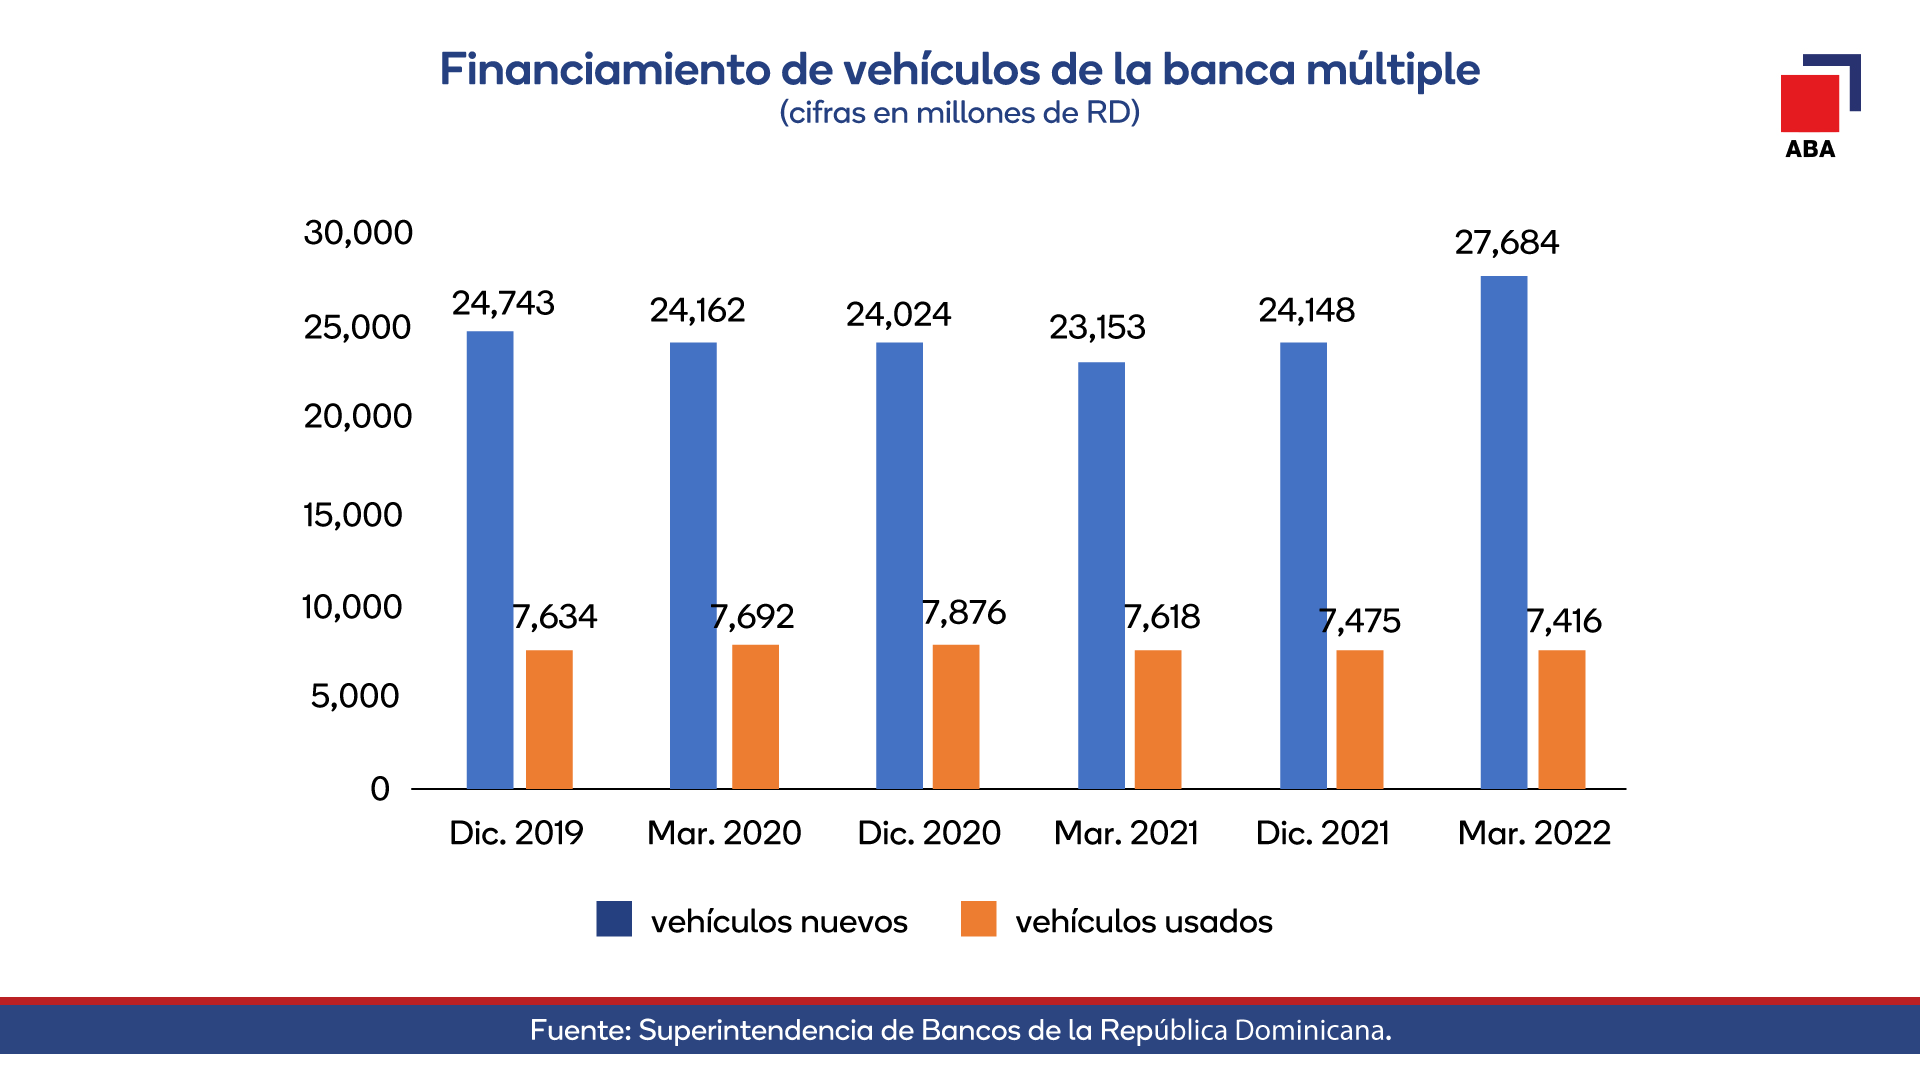 Financiamiento de vehículos de la banca múltiple 